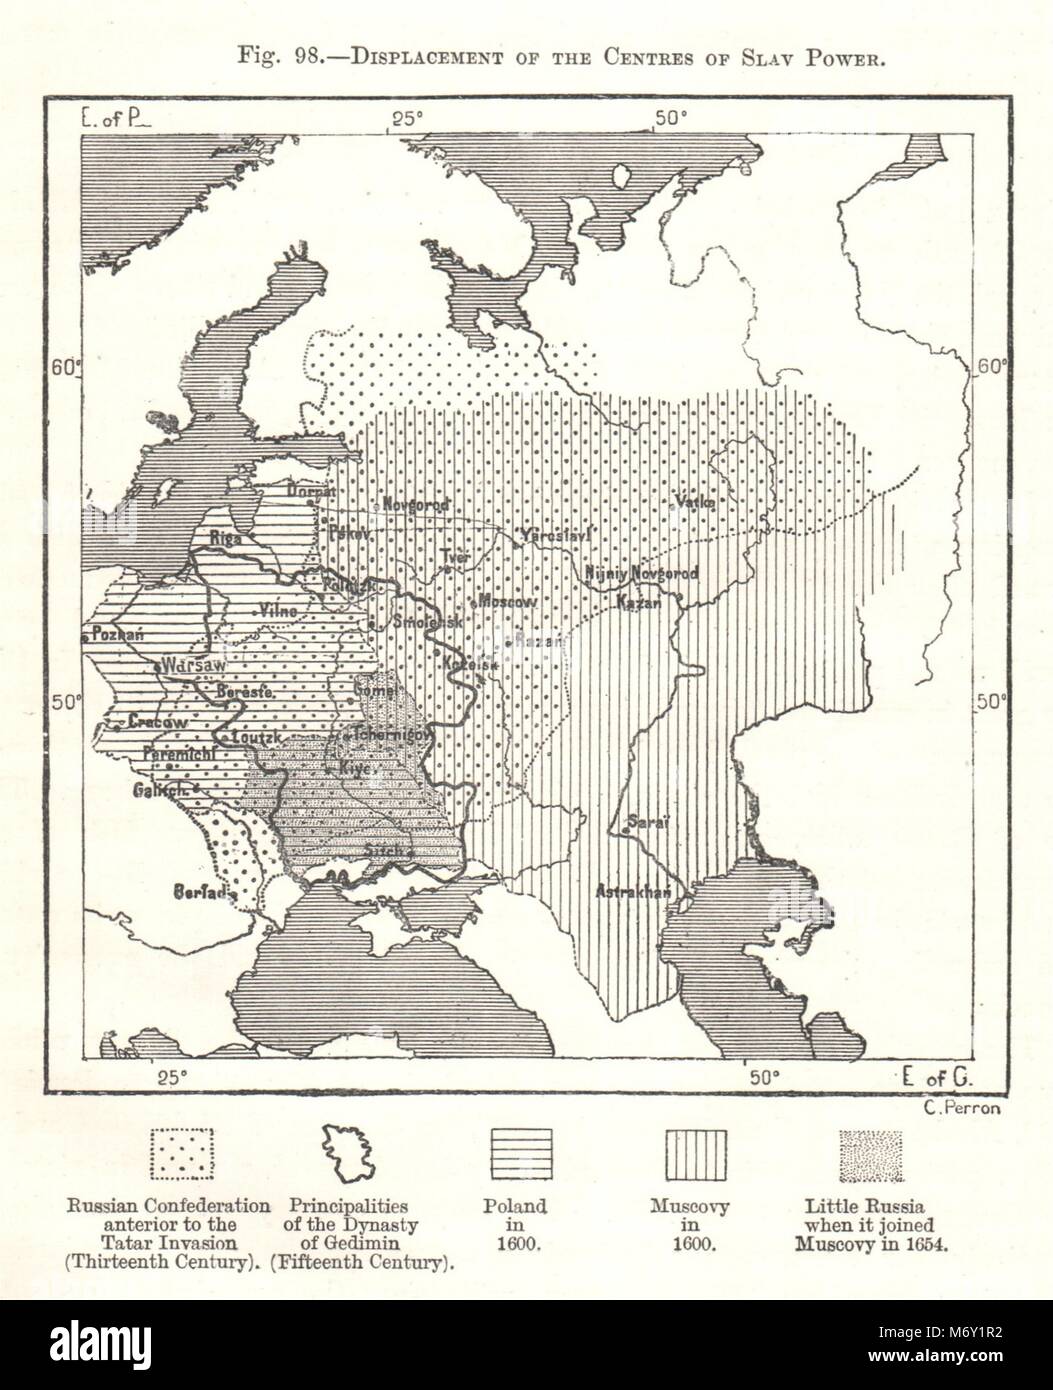 Verlagerung der Zentren der Slawischen macht. Russland. Kartenskizze 1885 alte Stockfoto